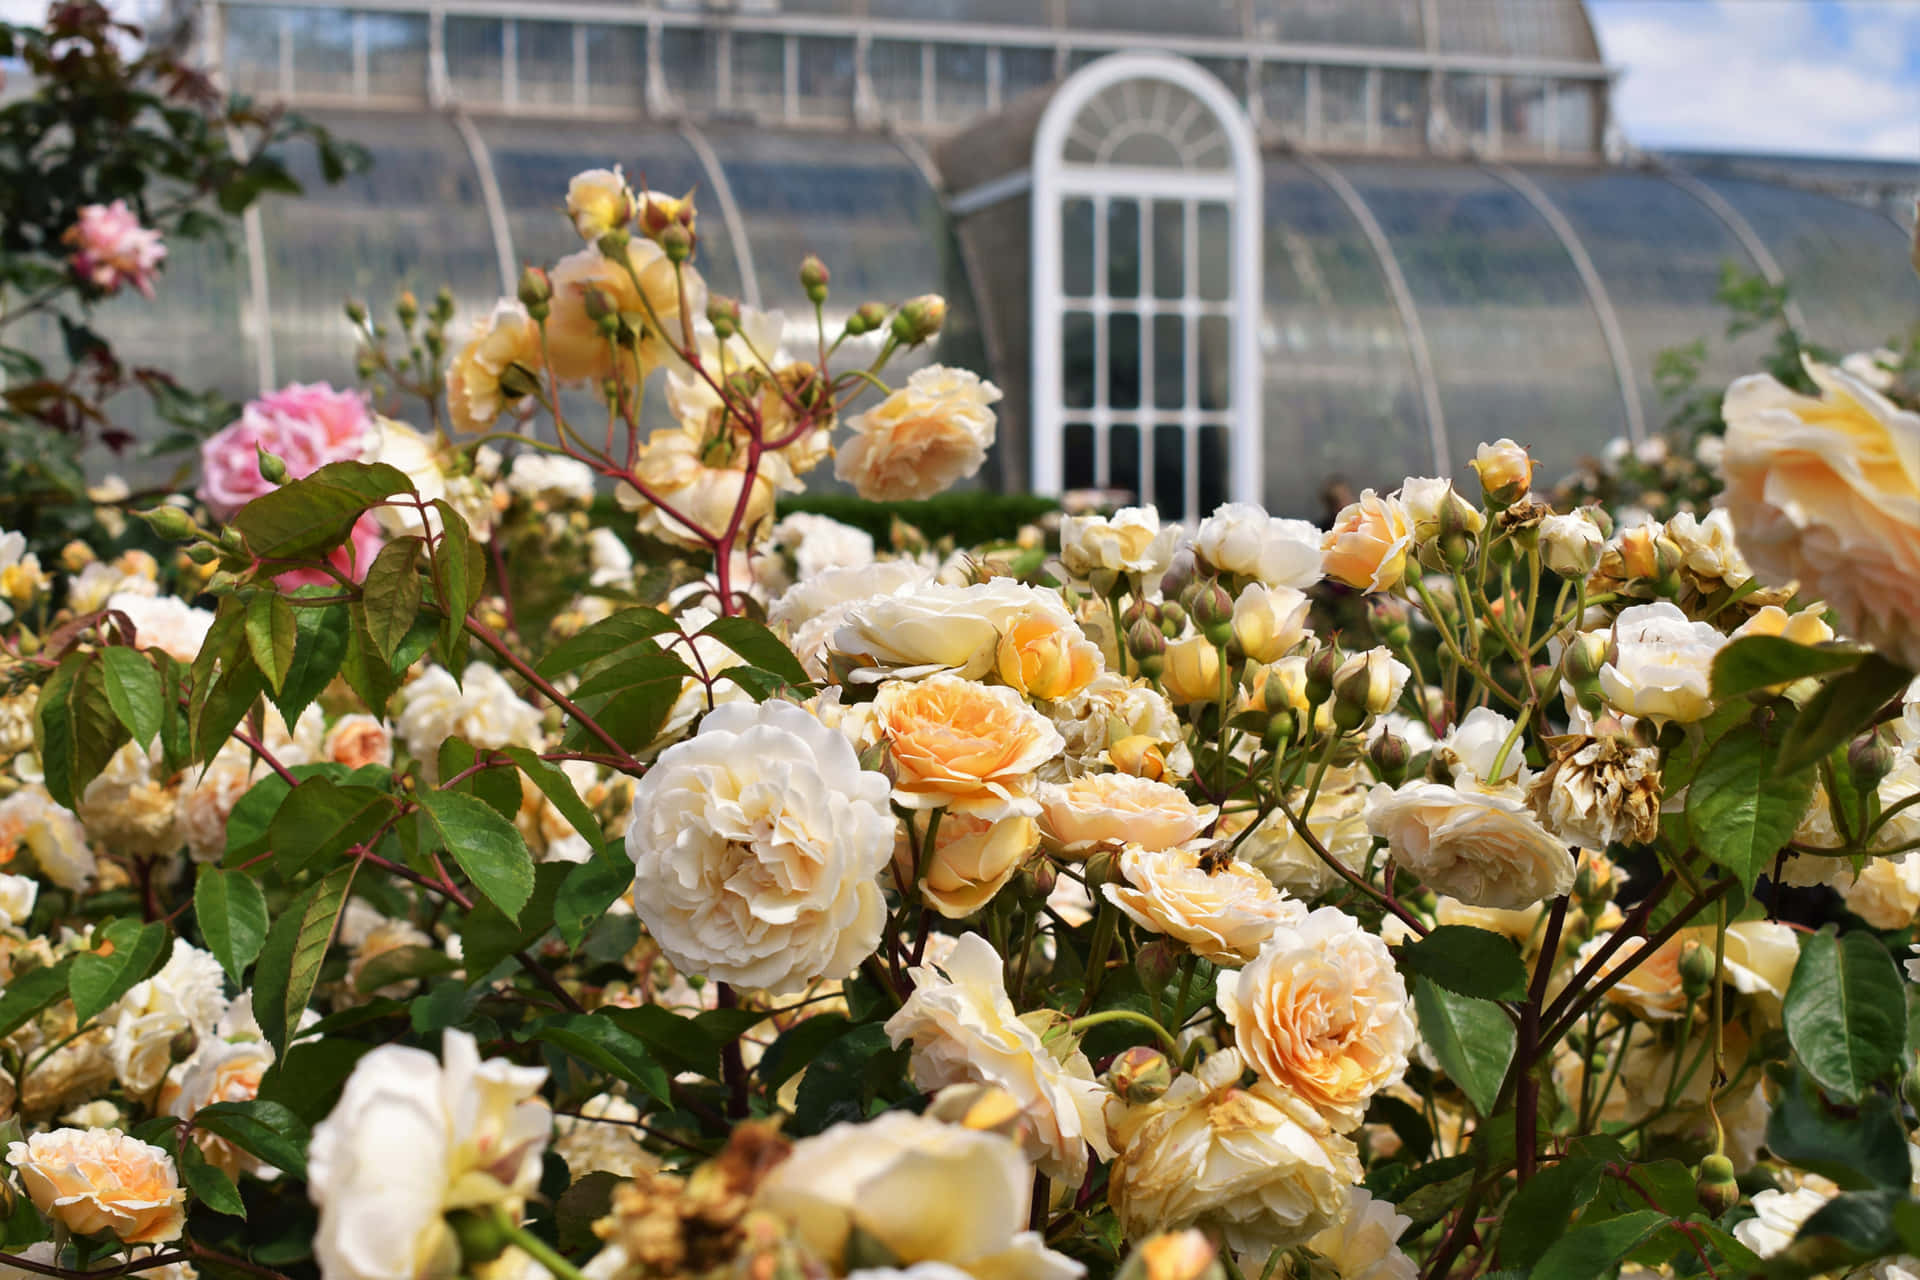 "Take a stroll through a fragrant garden of roses."